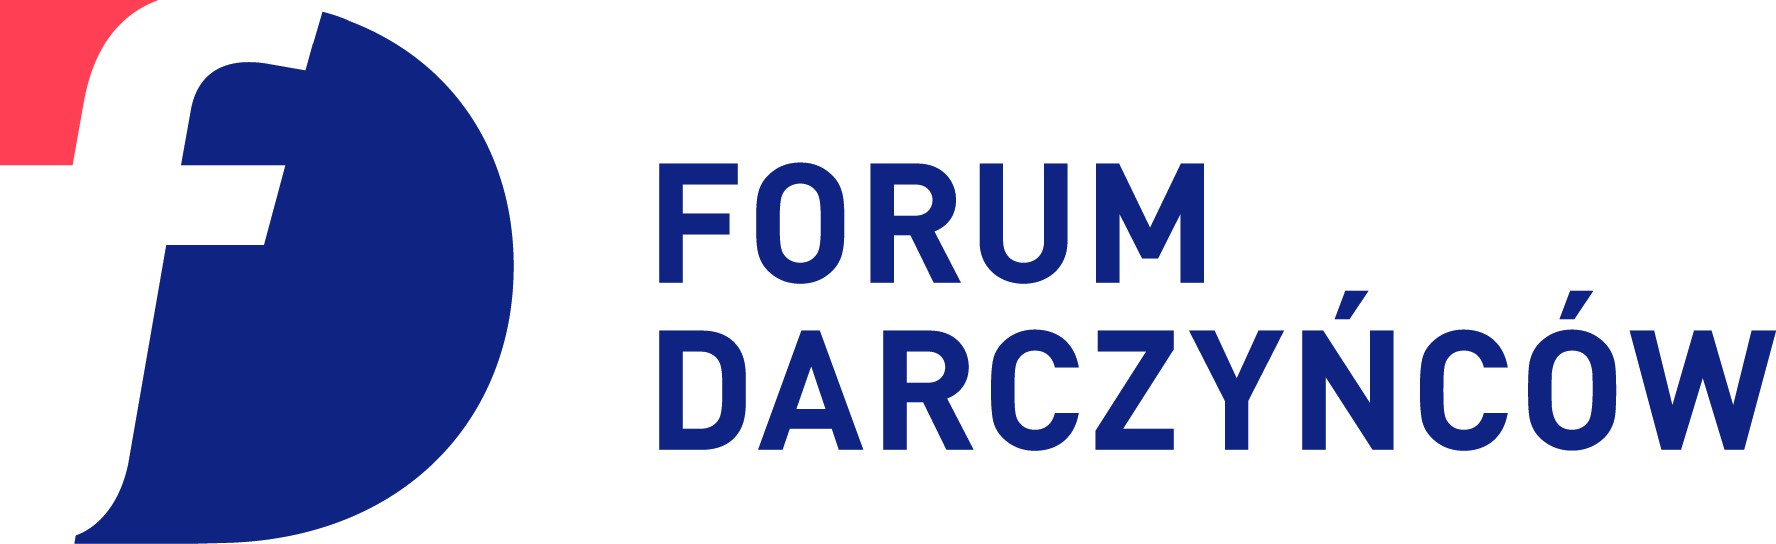 Forum Darczyńców w Polsce  - logo